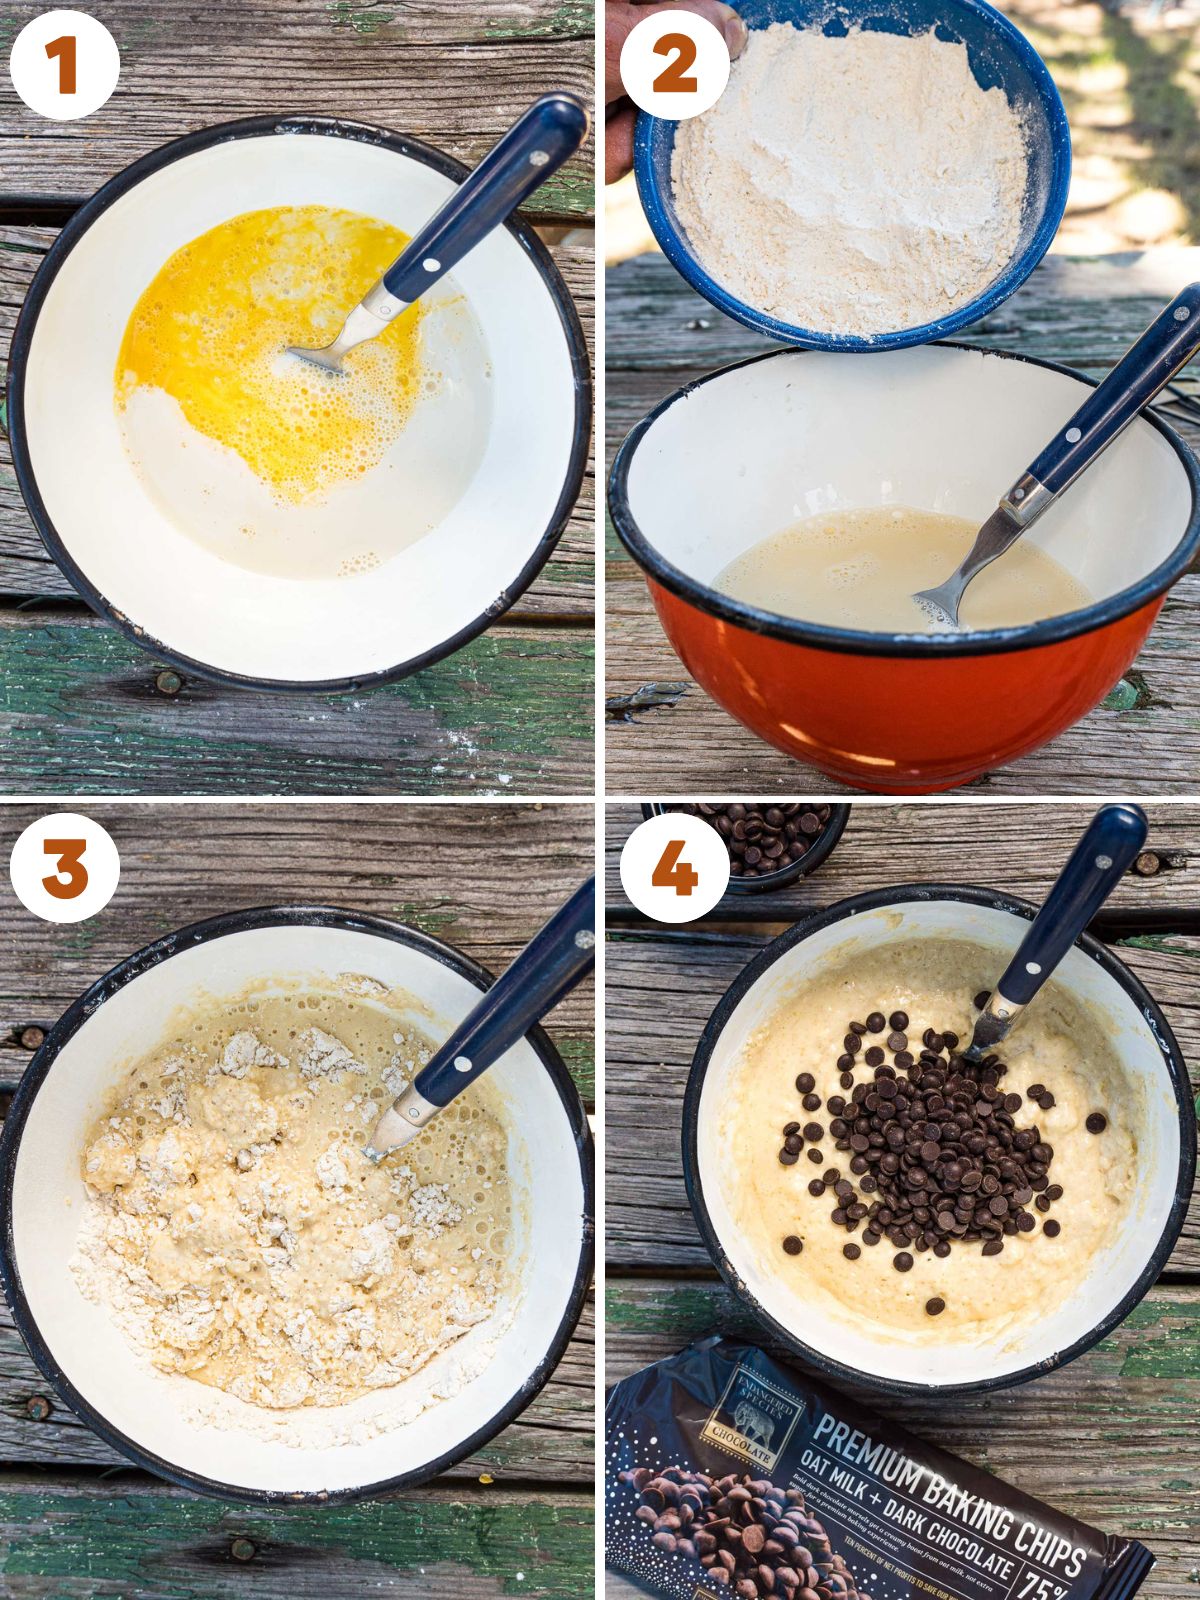 Steps to make pancake batter